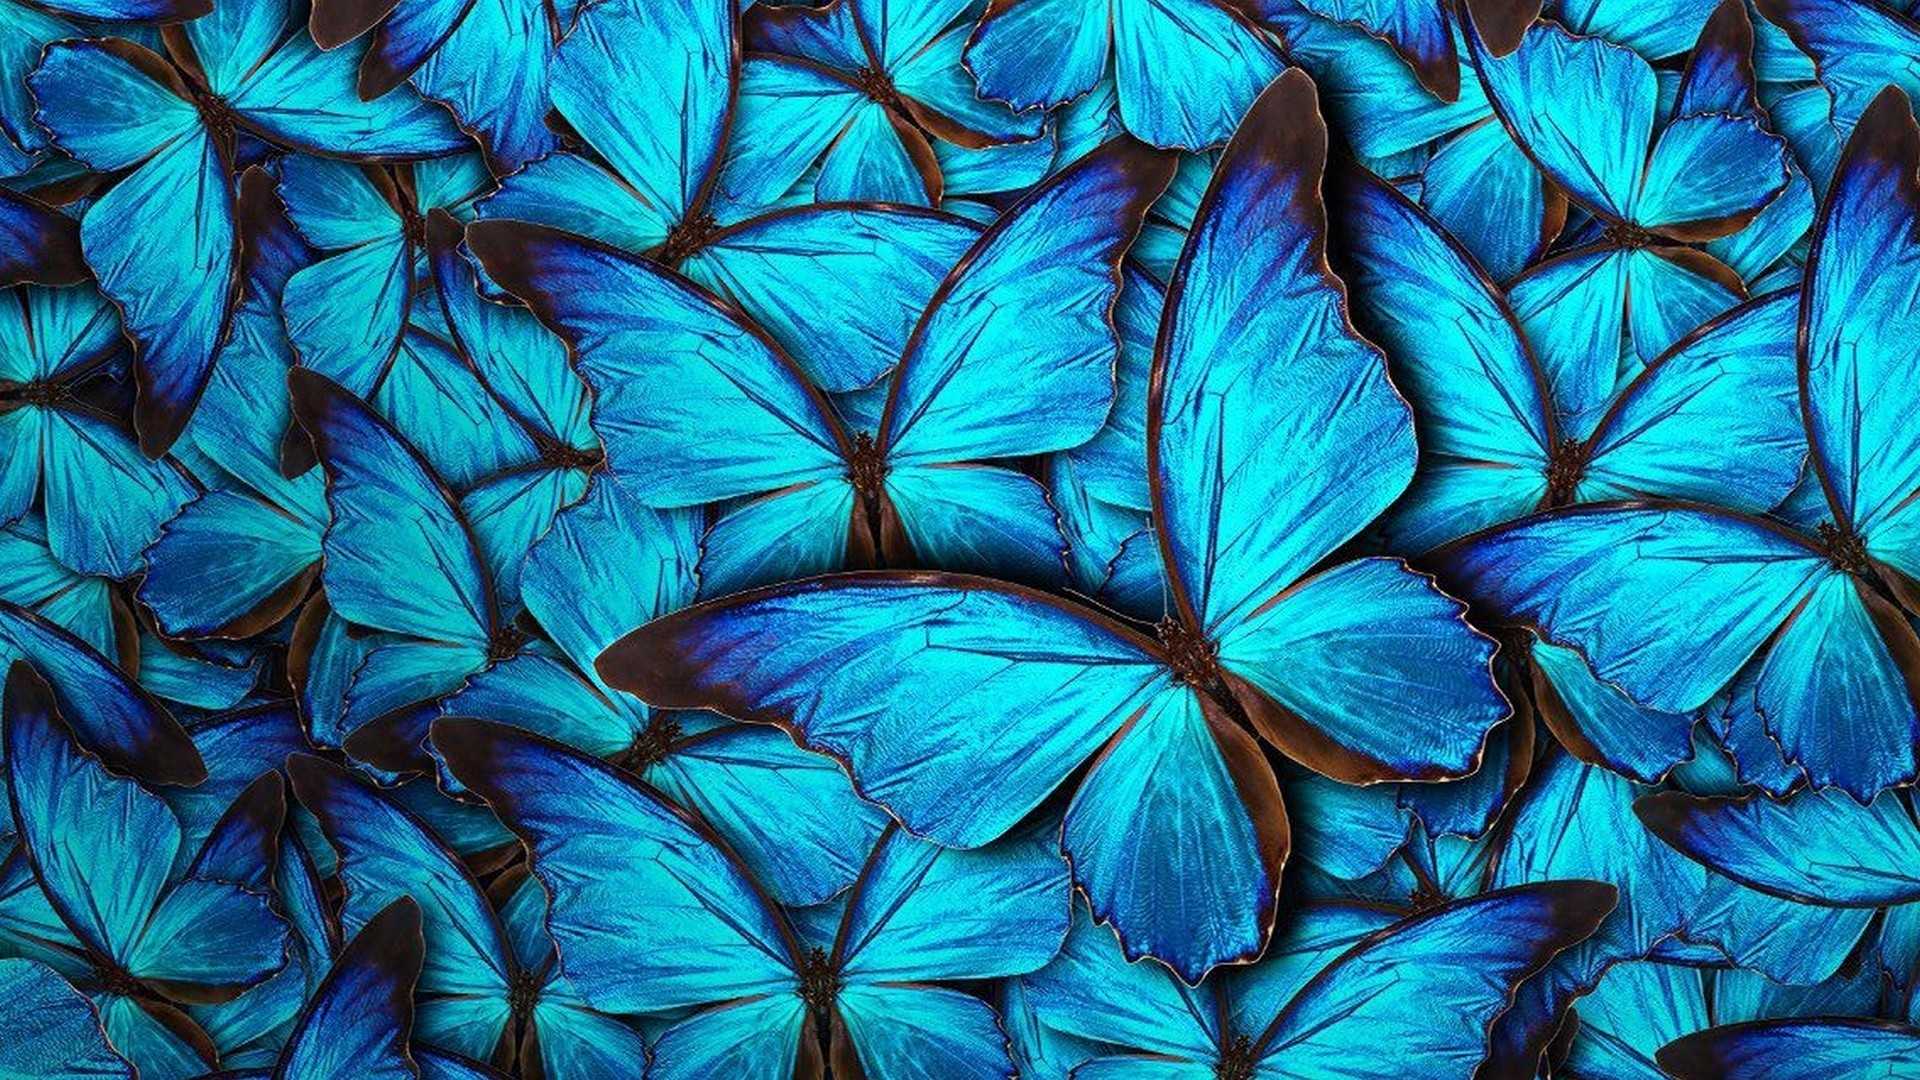 Butterfly Desktop Wallpaper 1